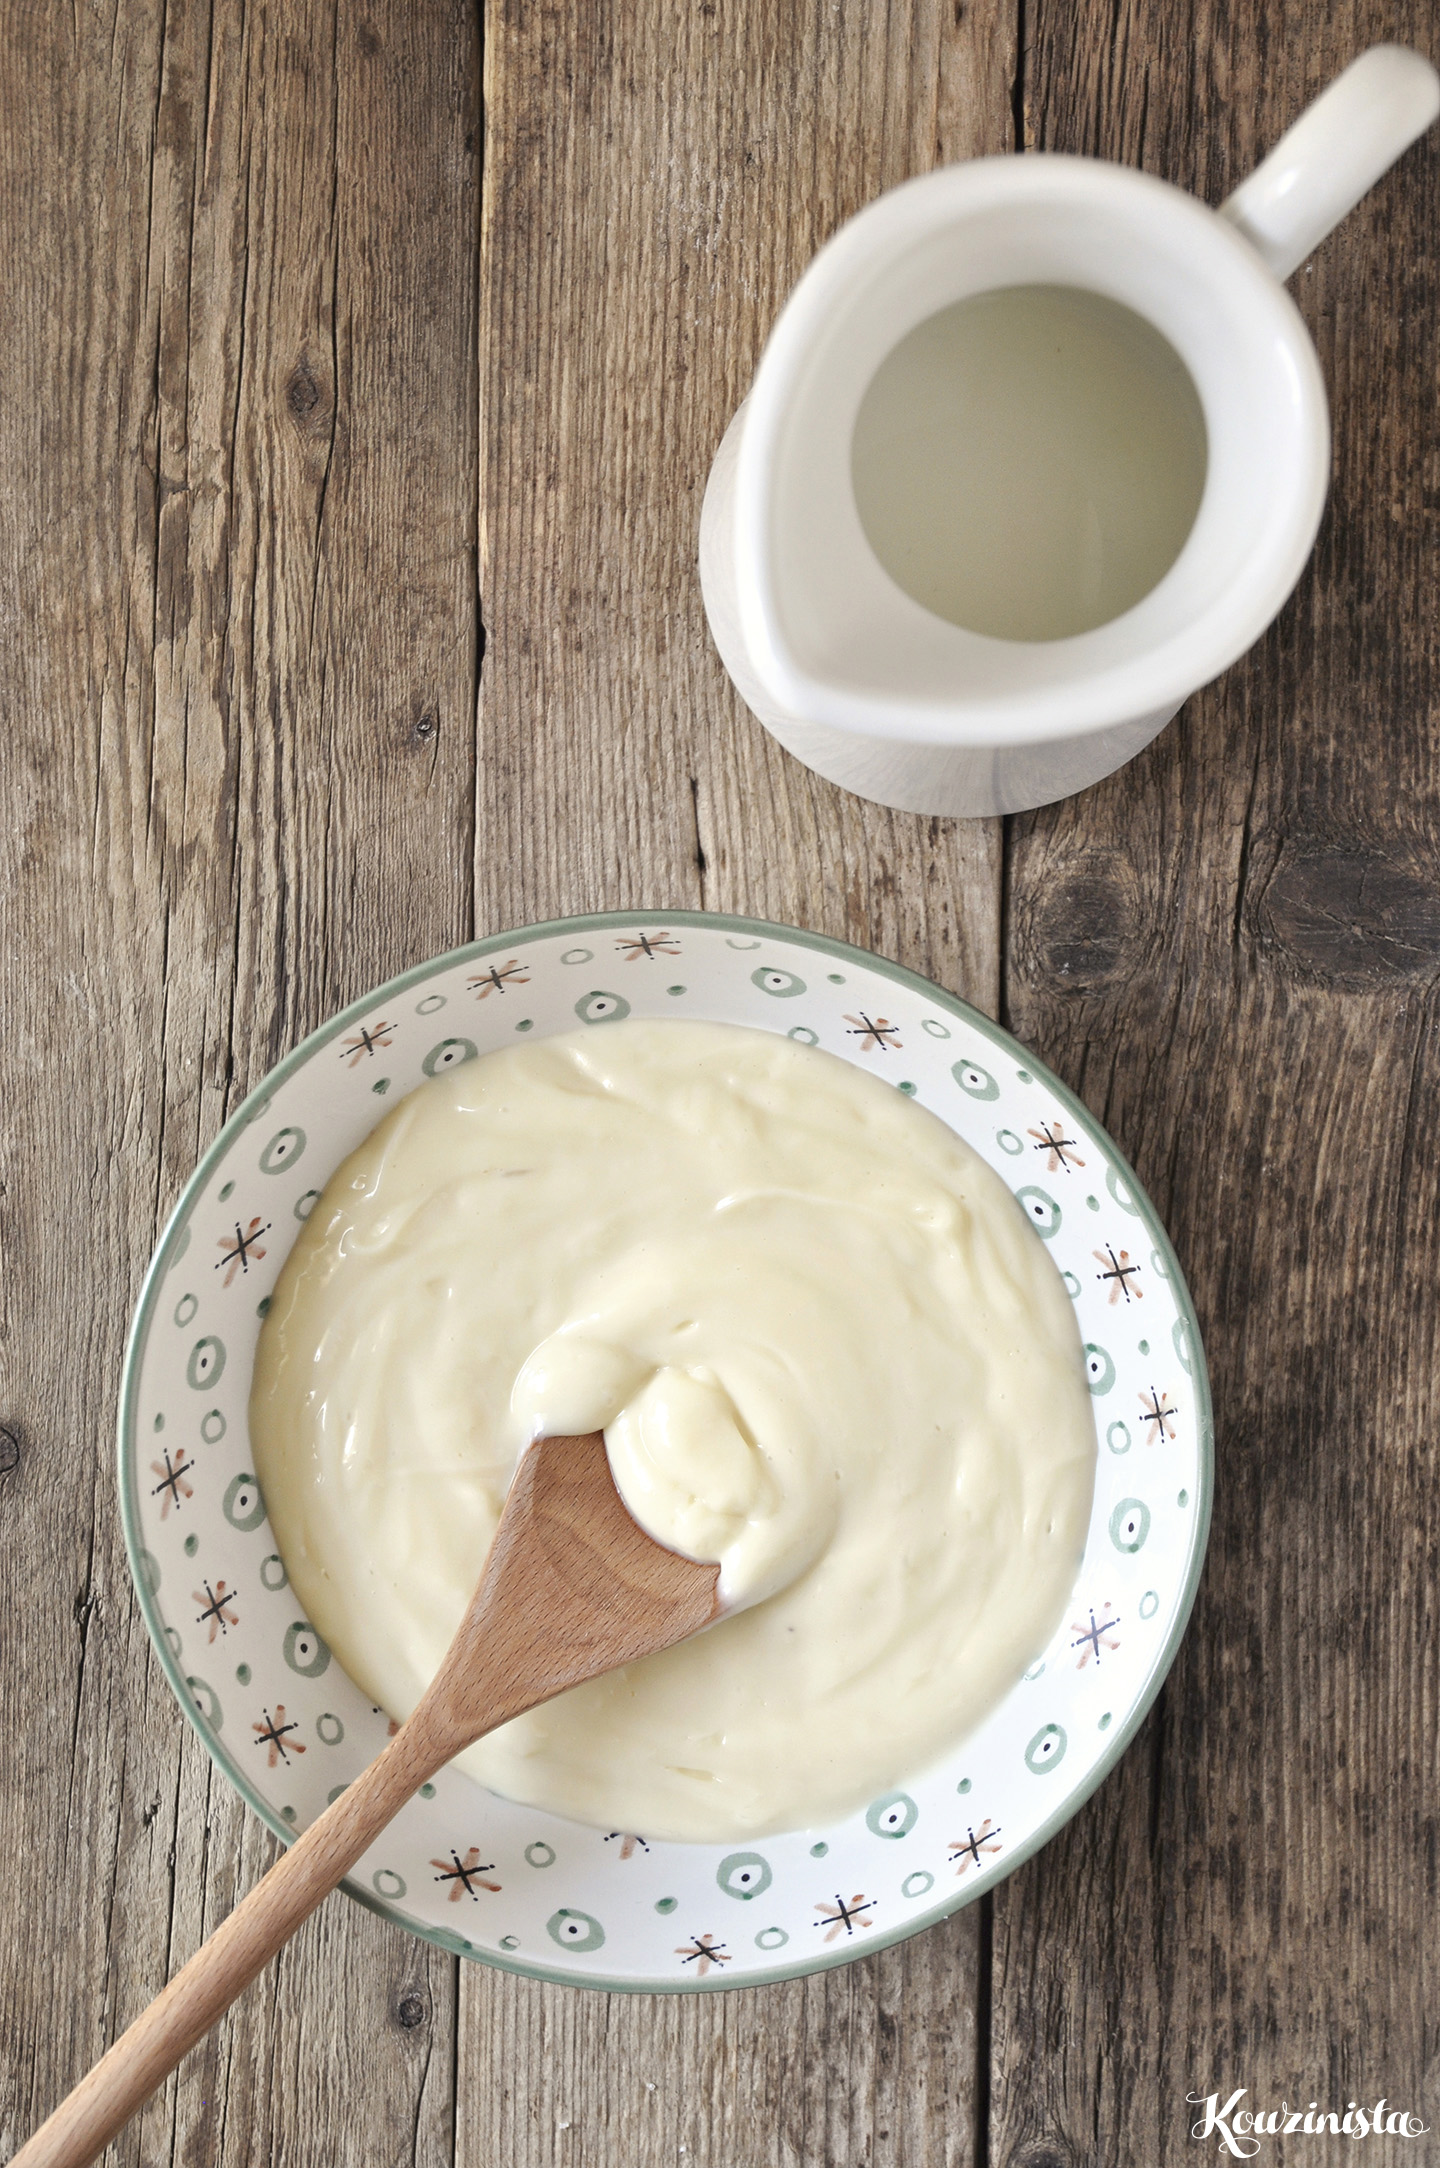 Φουρνιστοί λουκουμάδες με κρέμα / Cream-filled baked bomboloni